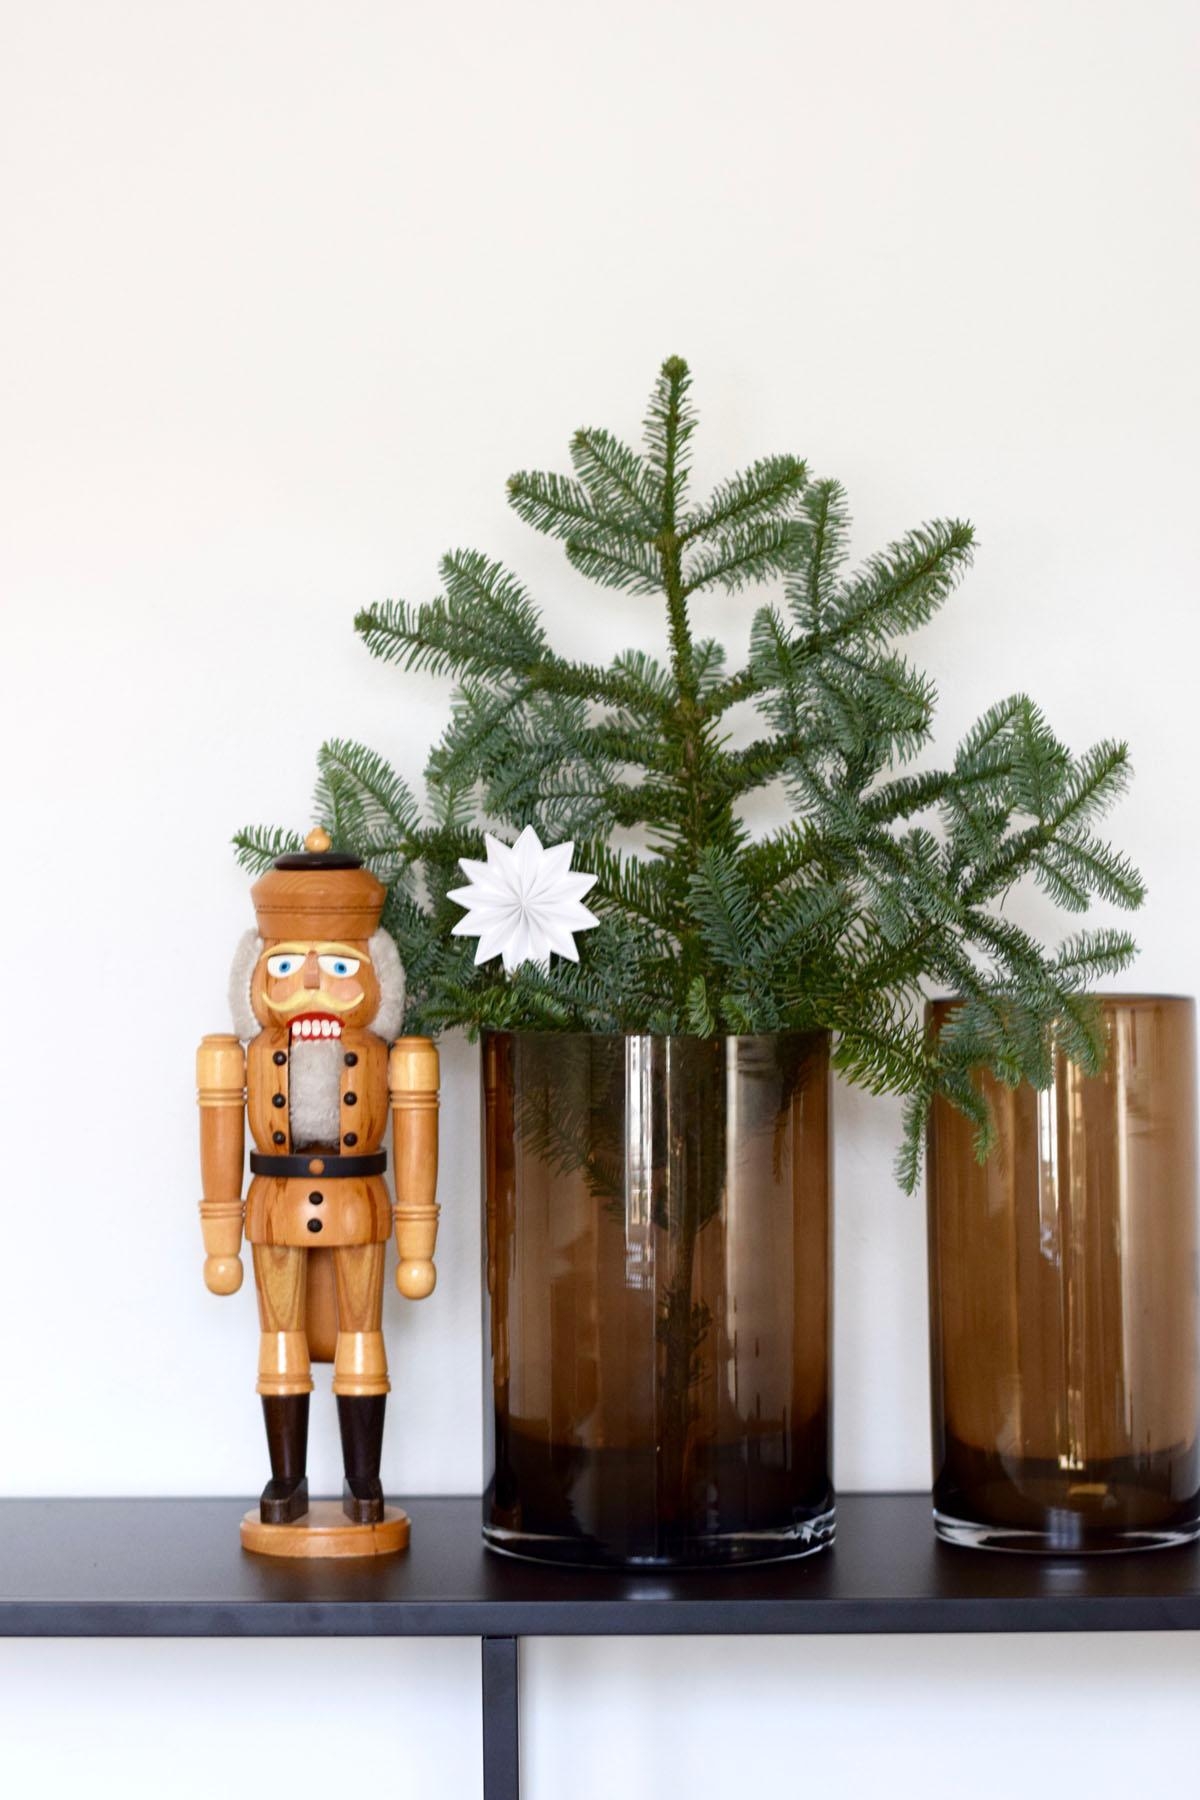 Holz, Glas, Tanne und der hübsche Stern von Zeljka...
#weihnachten #weihnachtsdeko #advent